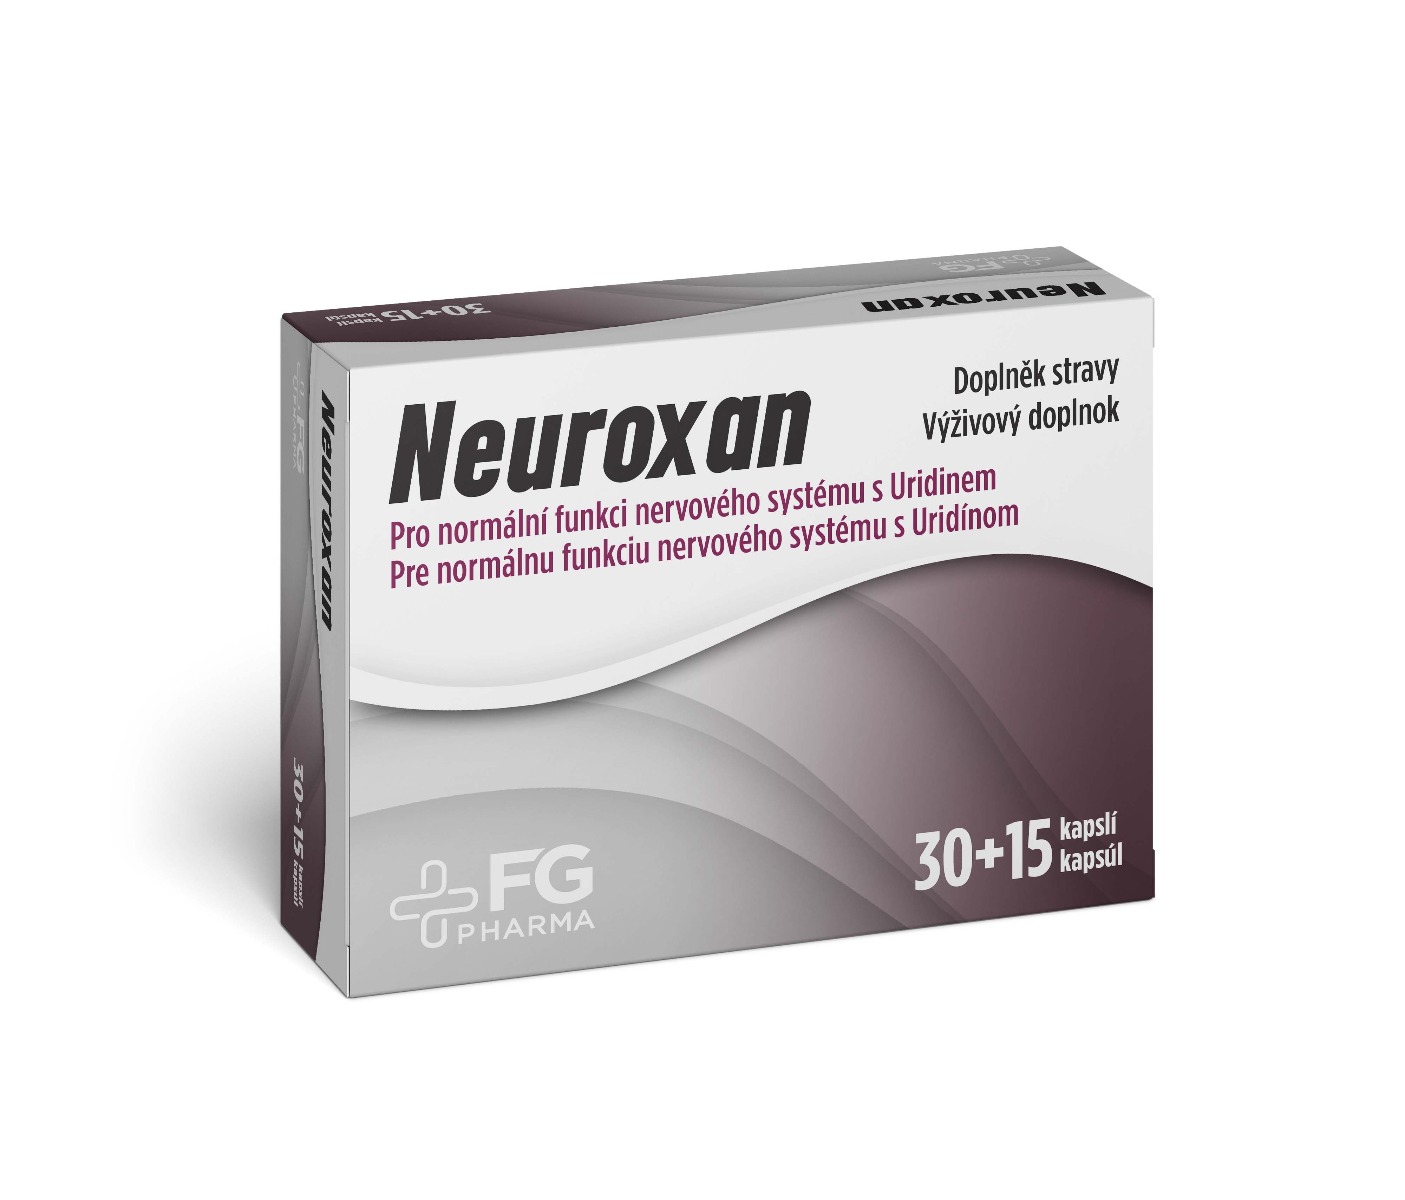 FG Pharma Neuroxan 30+15 kapslí FG Pharma